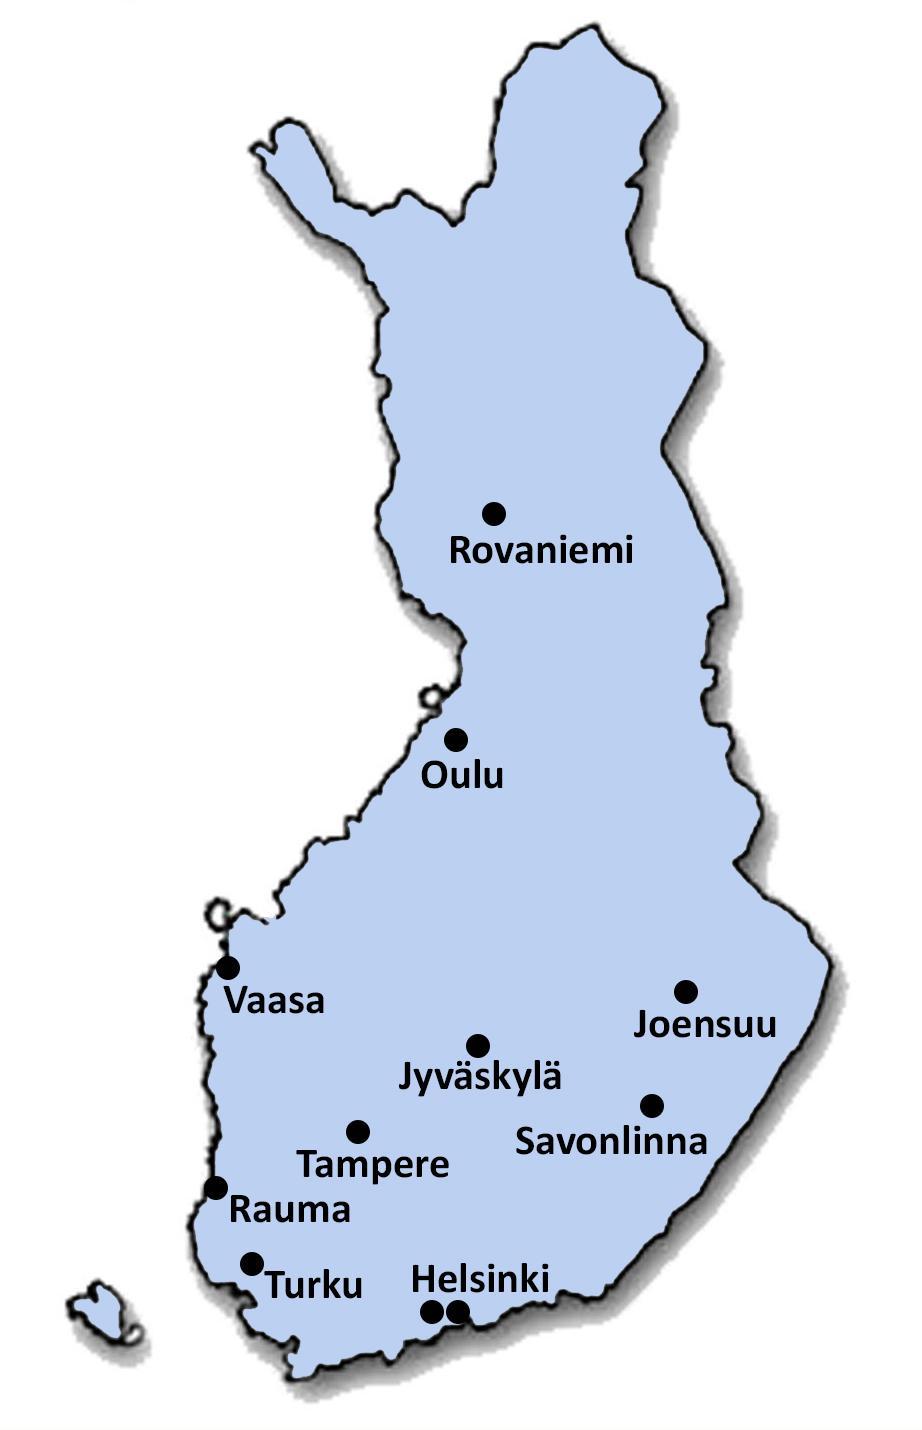 HARJOITTELUKOULUT 1. Lappi: Rovaniemi 2. Pohjois-Suomi: Oulu (2) 3. Länsi- ja Sisä-Suomi: Jyväskylä, Tampere ja Vaasa 4.